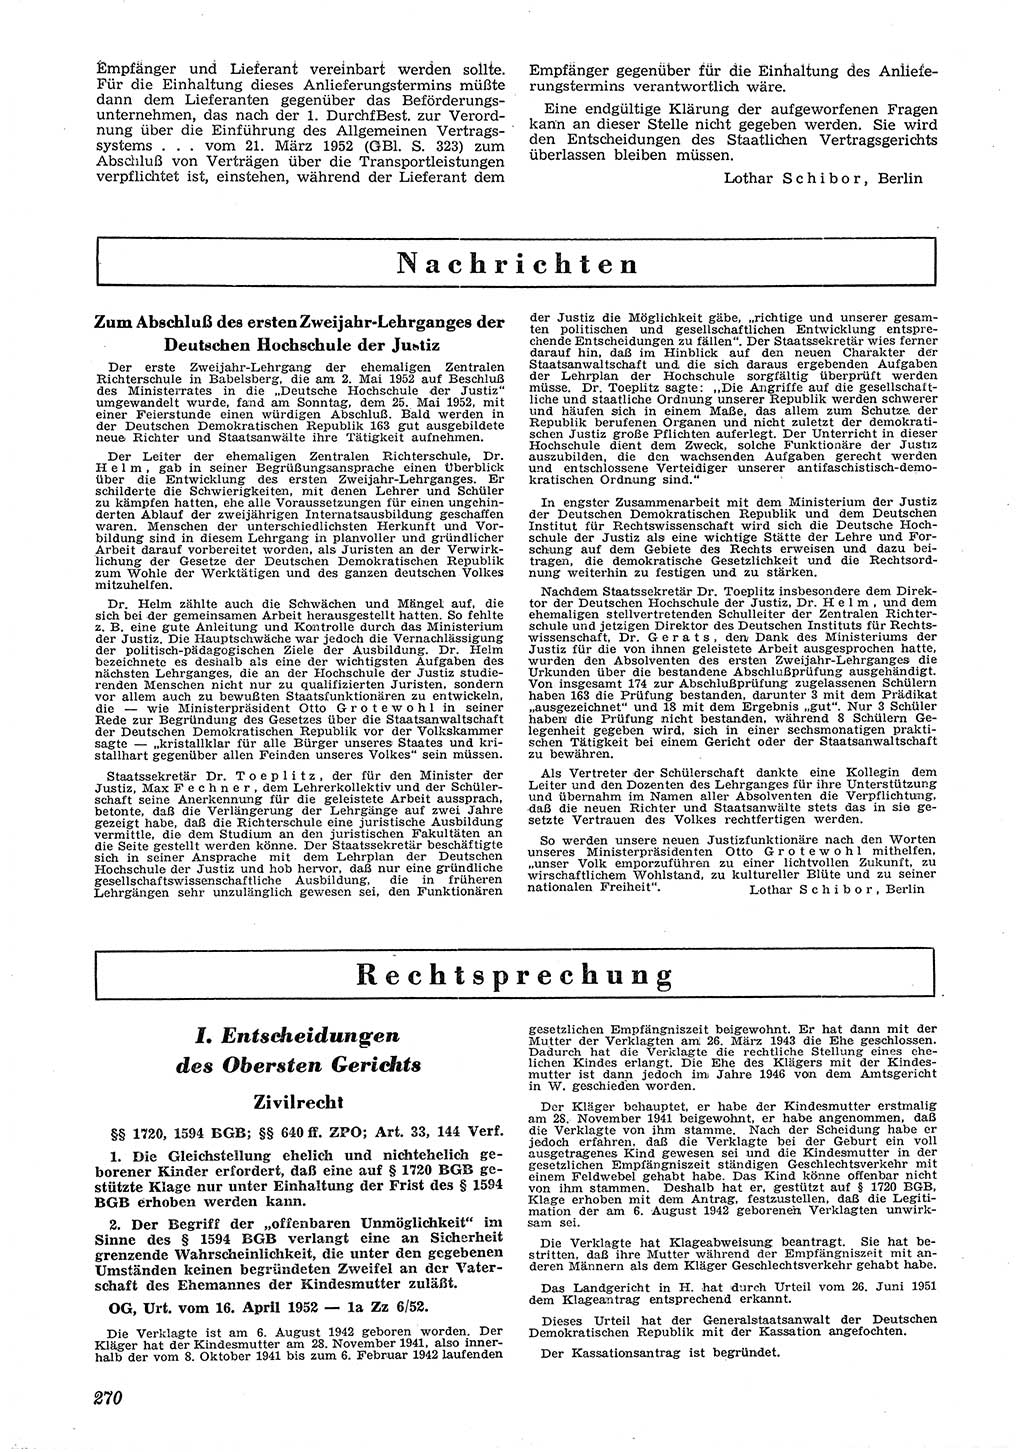 Neue Justiz (NJ), Zeitschrift für Recht und Rechtswissenschaft [Deutsche Demokratische Republik (DDR)], 6. Jahrgang 1952, Seite 270 (NJ DDR 1952, S. 270)